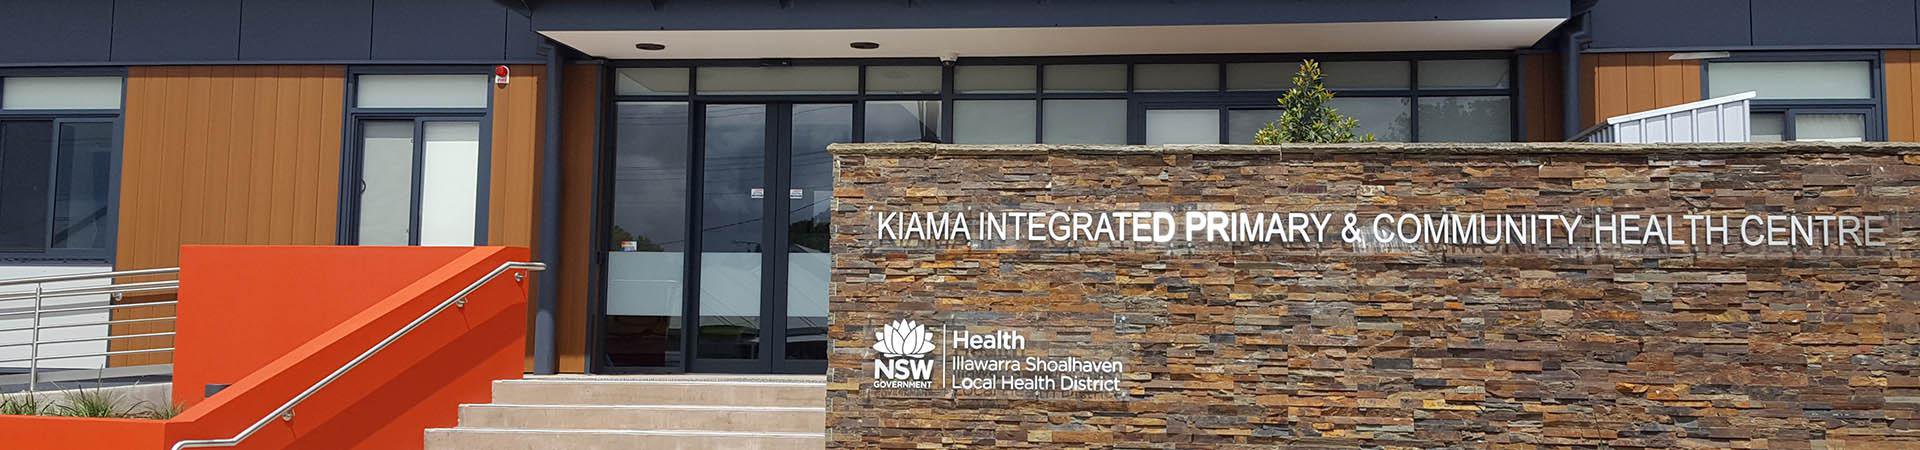 Kiama Integrated Primary & Community Health Centre